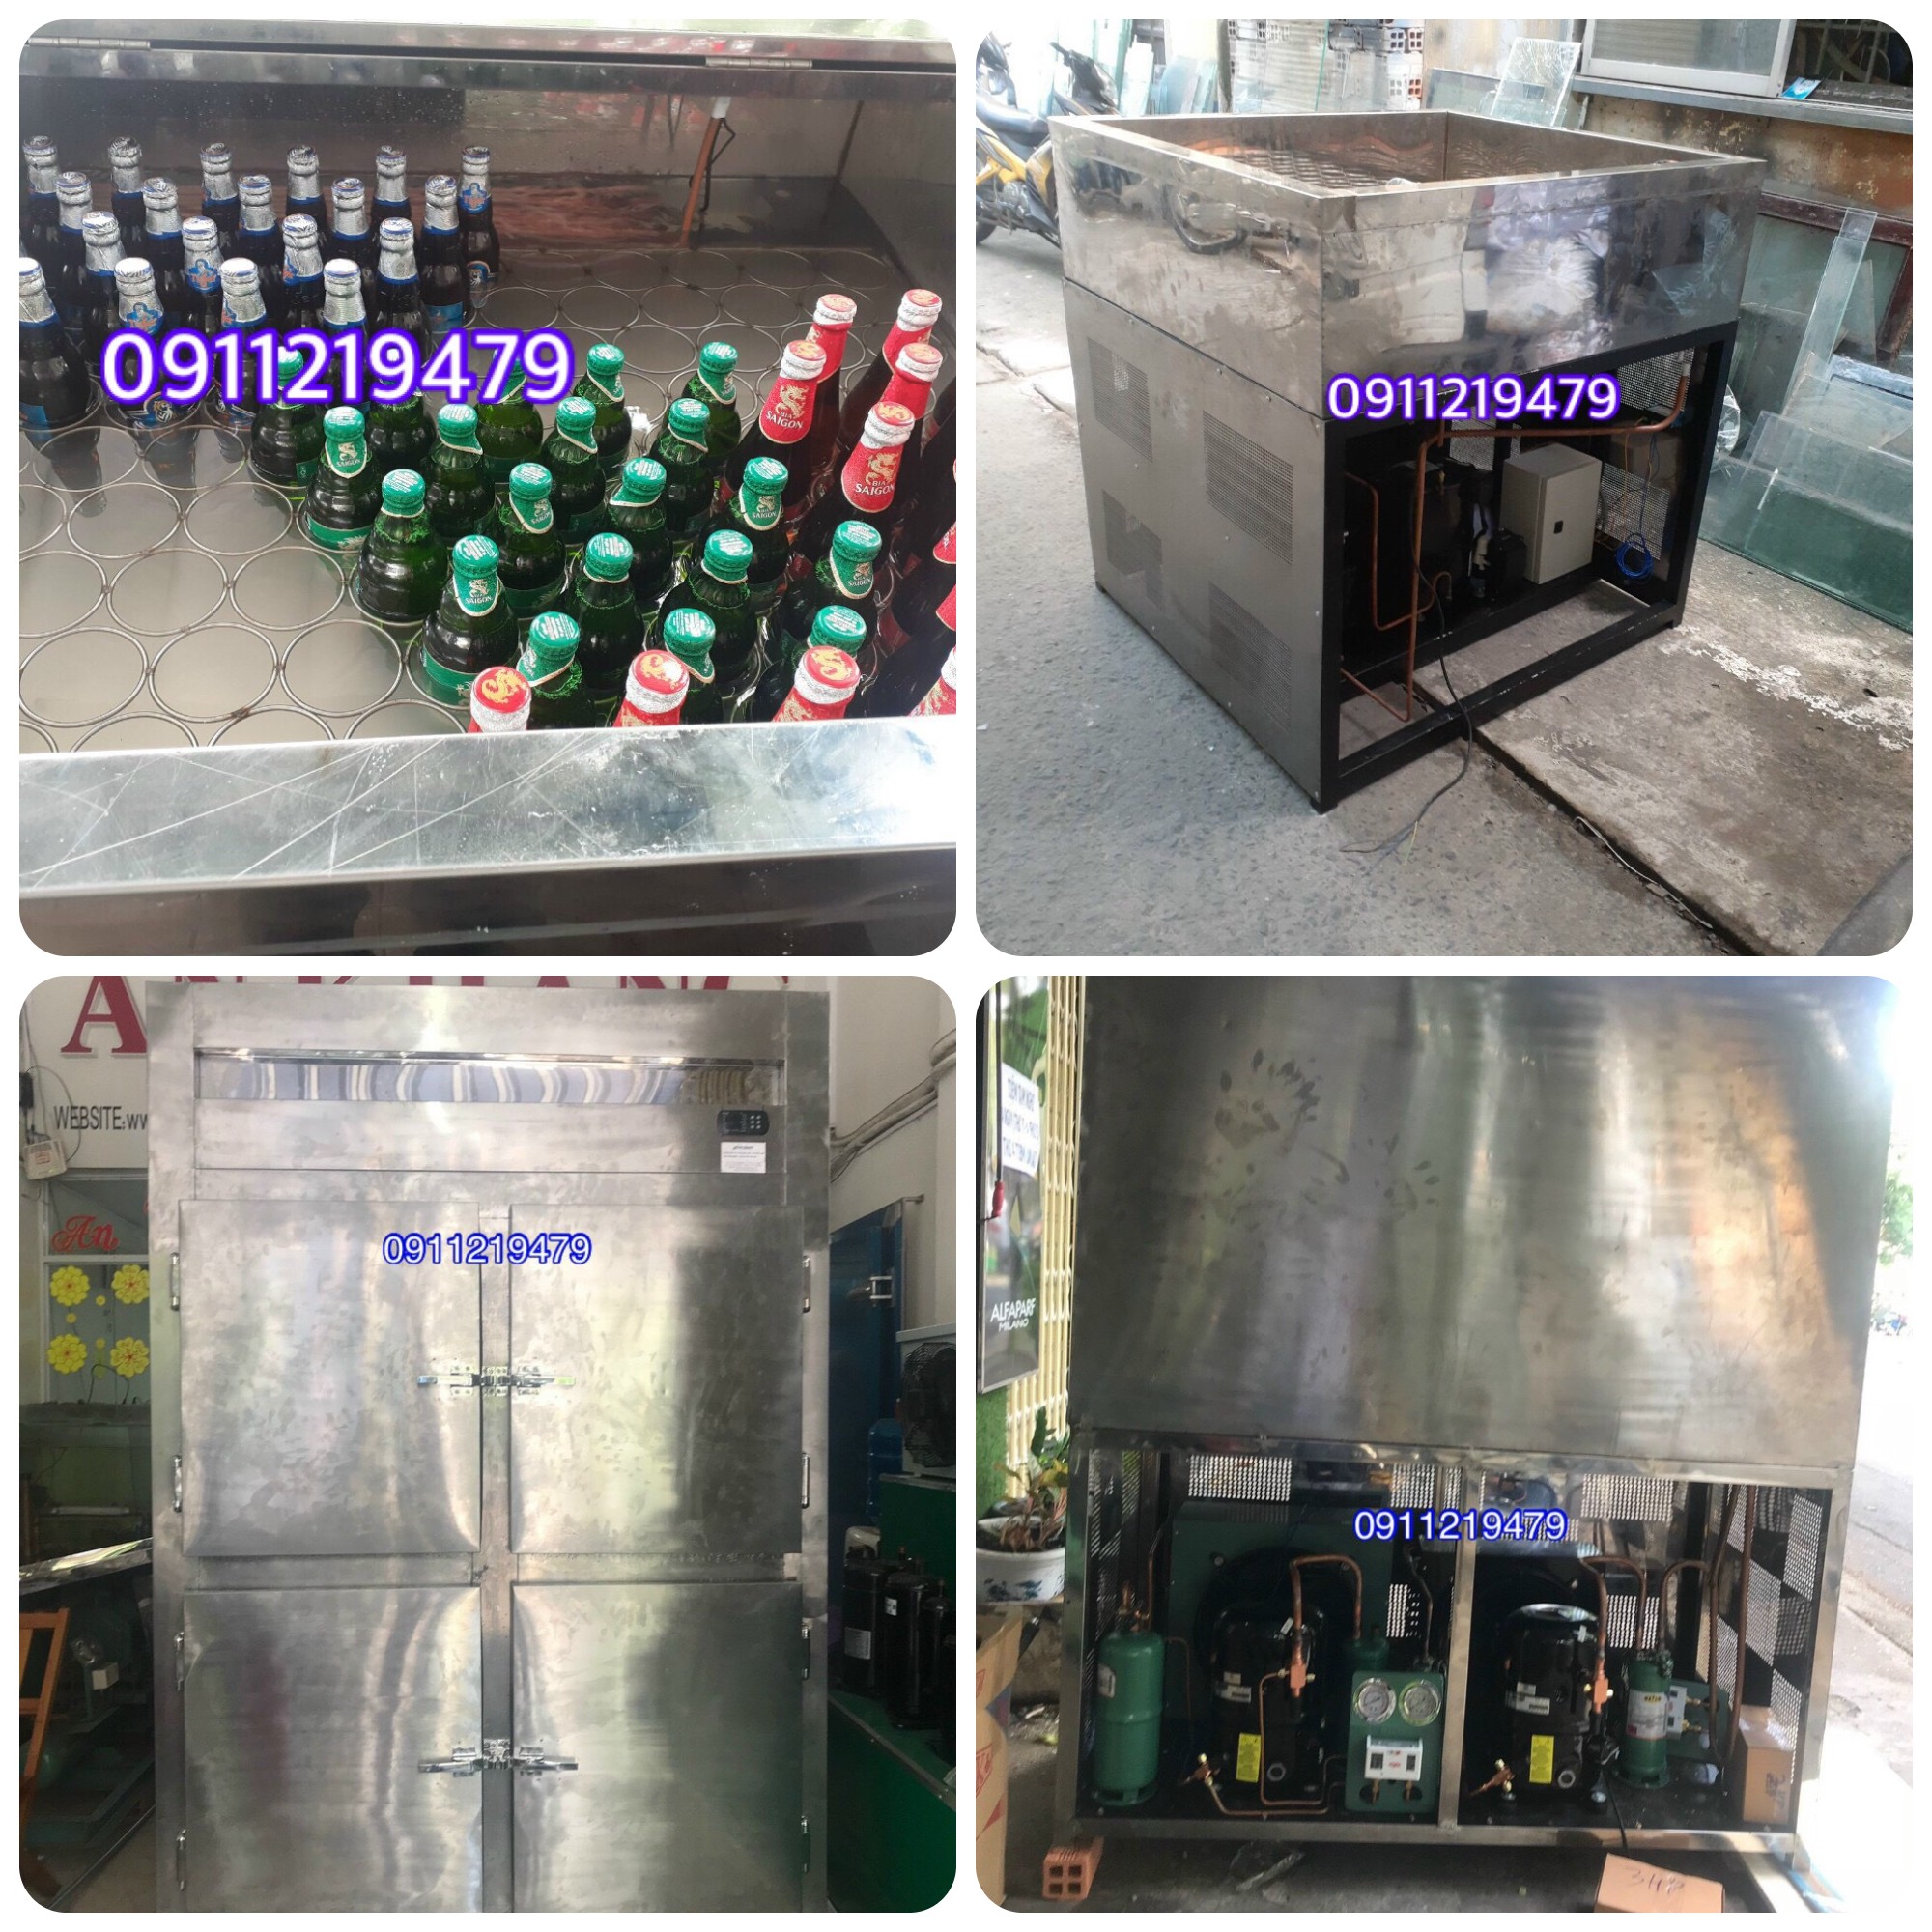 cung cấp tủ bia sệt tại quy nhơn, 0947459479, tủ làm lạnh bia, giá rẻ